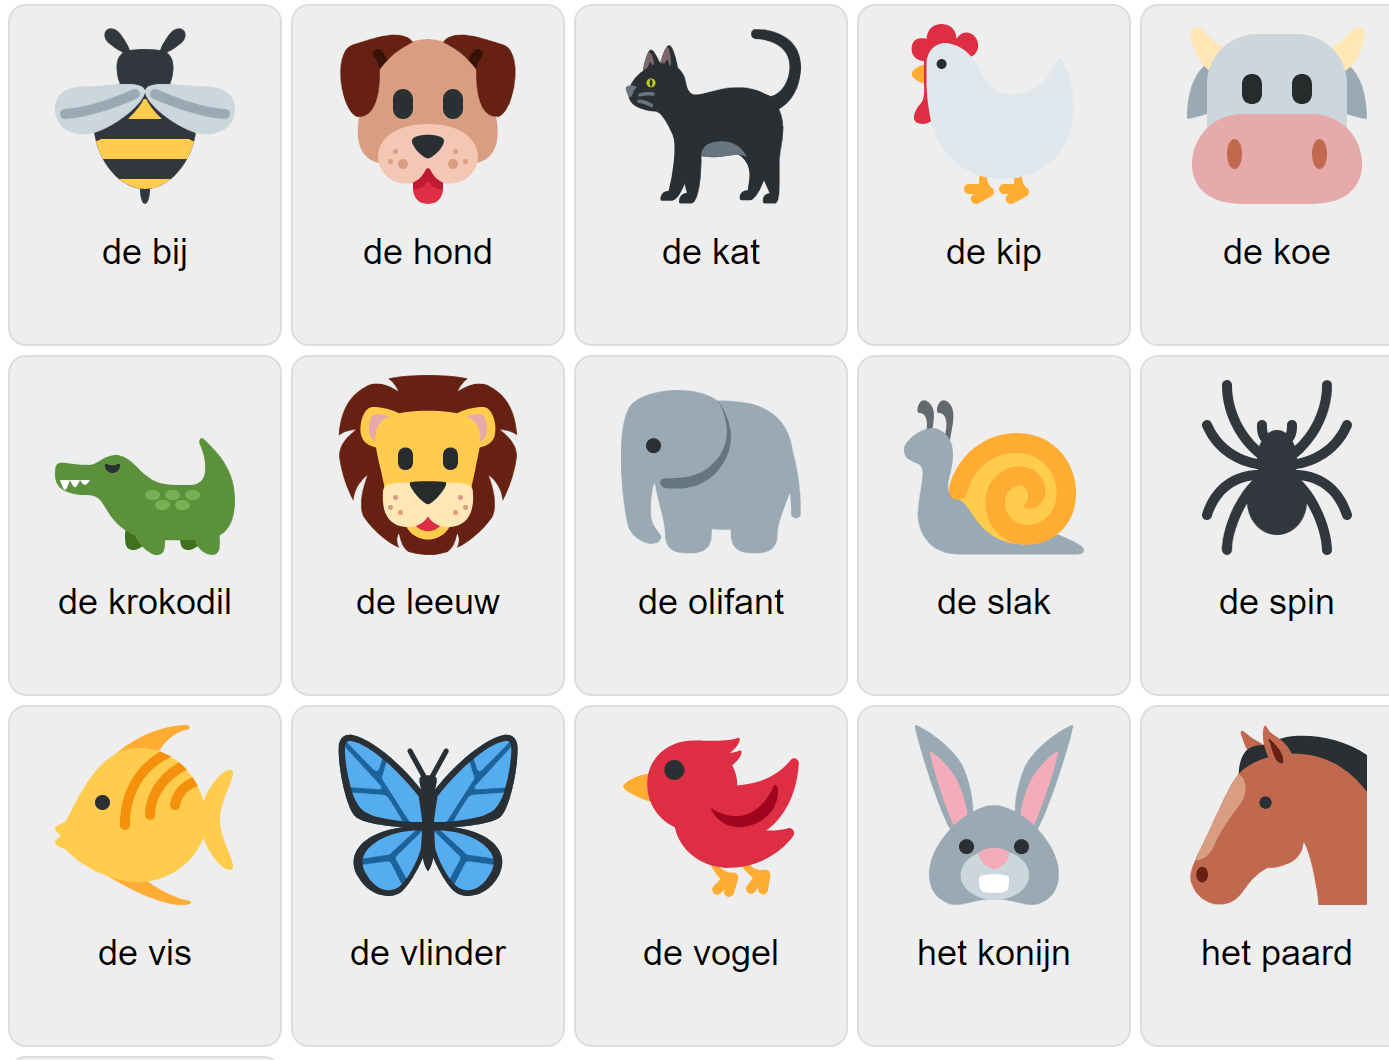 Djur på nederländska